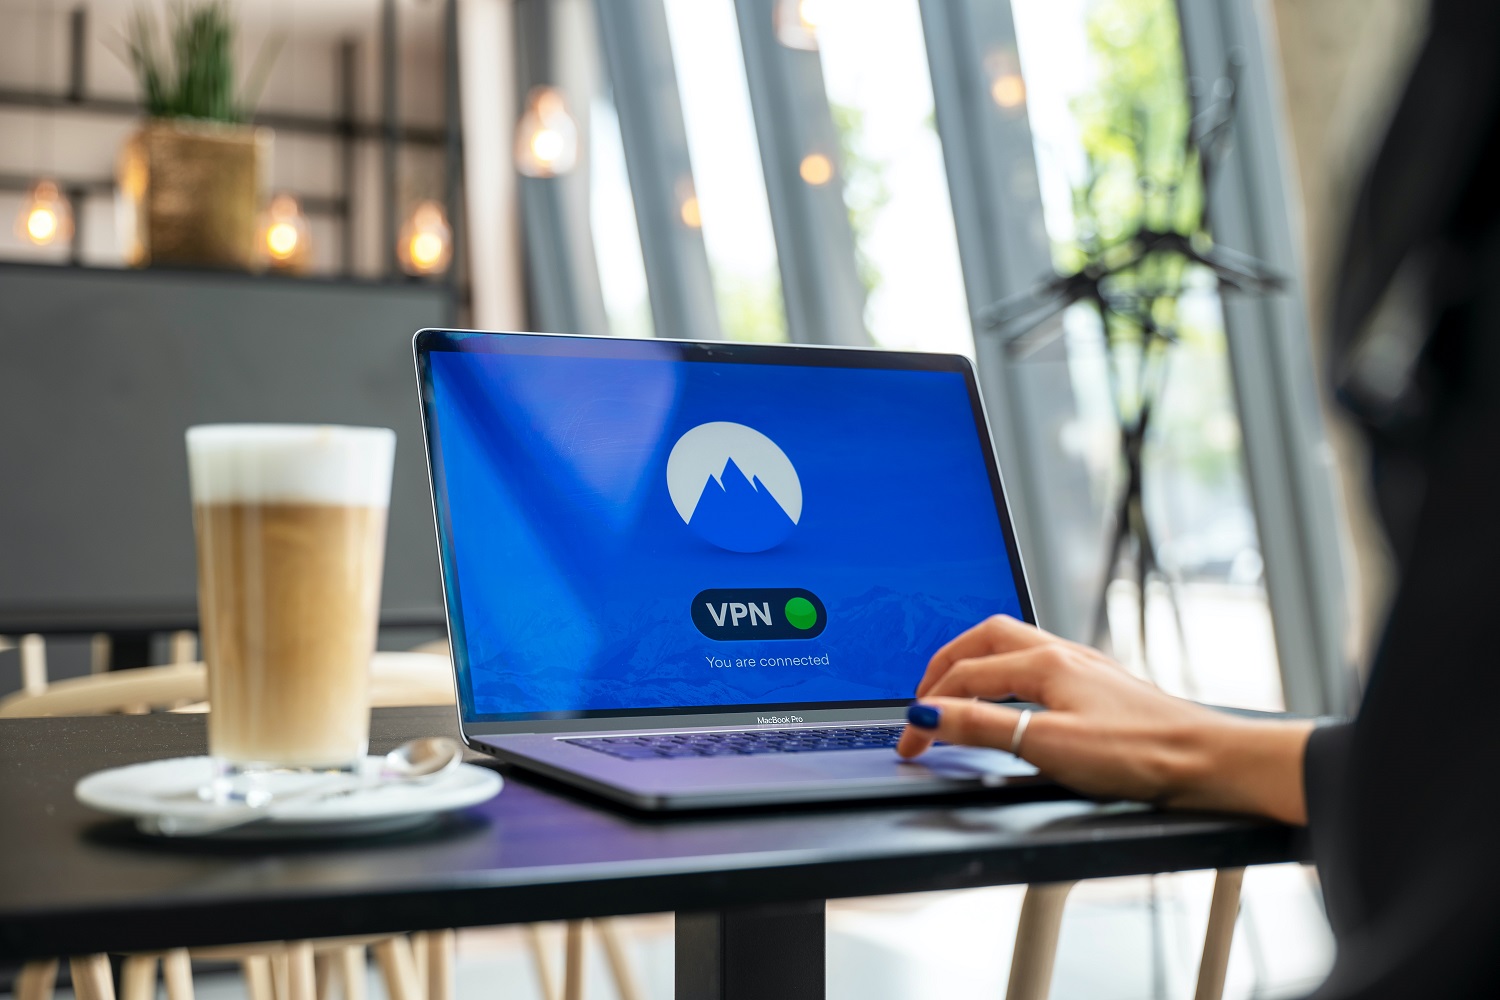 VPN on a laptop